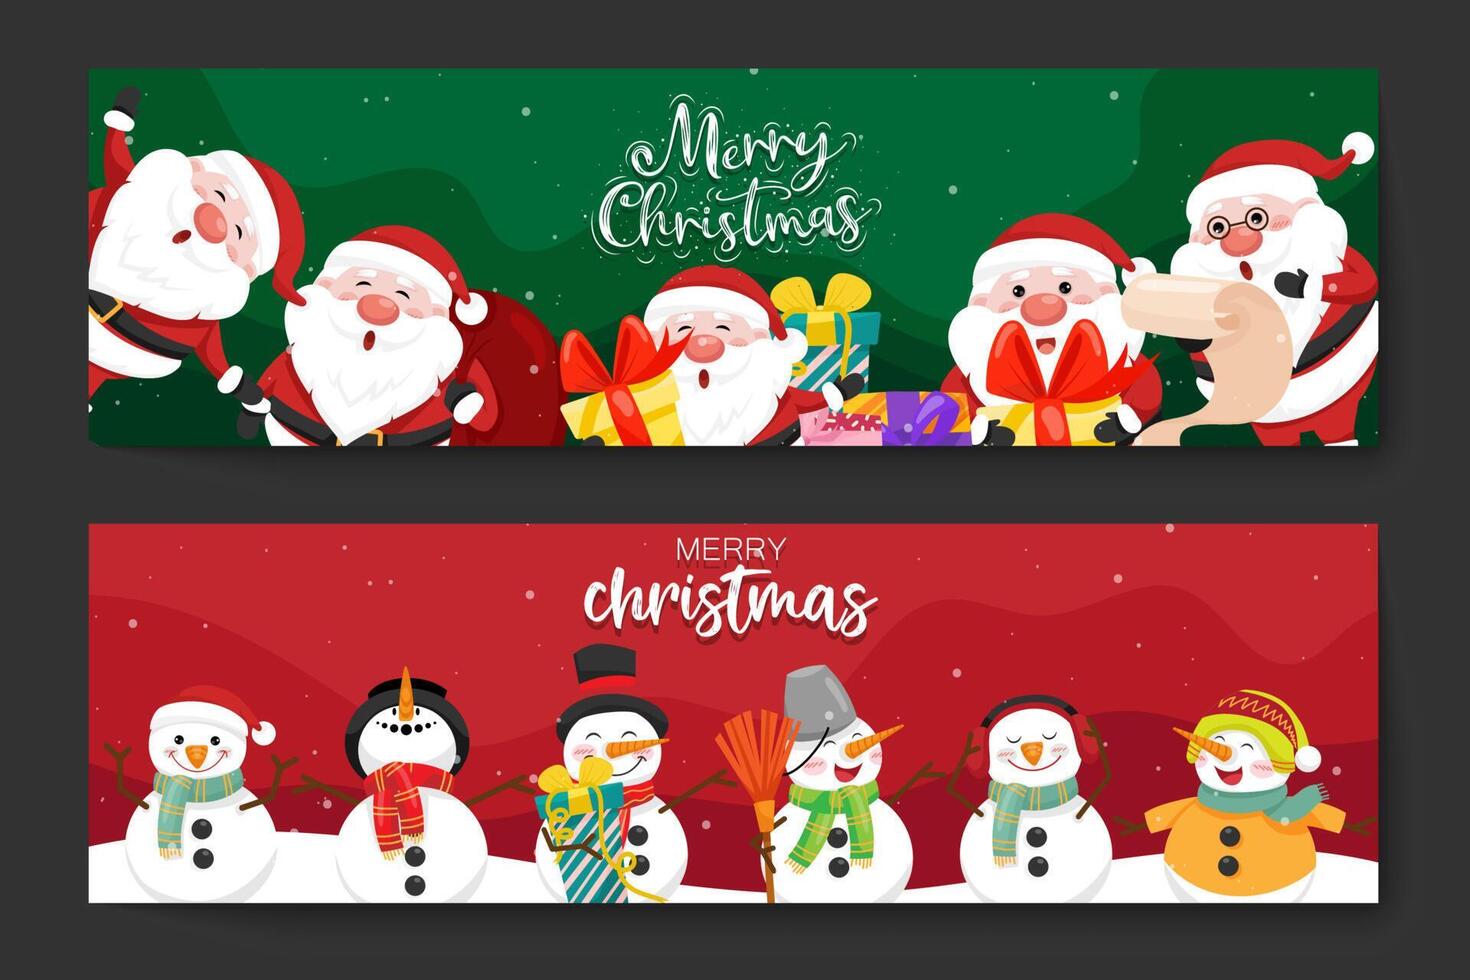 god jul och gott nytt år banner jultomten, snögubbe med presentaskar, dekorativa designelement för julhelgen shopping marknadsföring. vektor